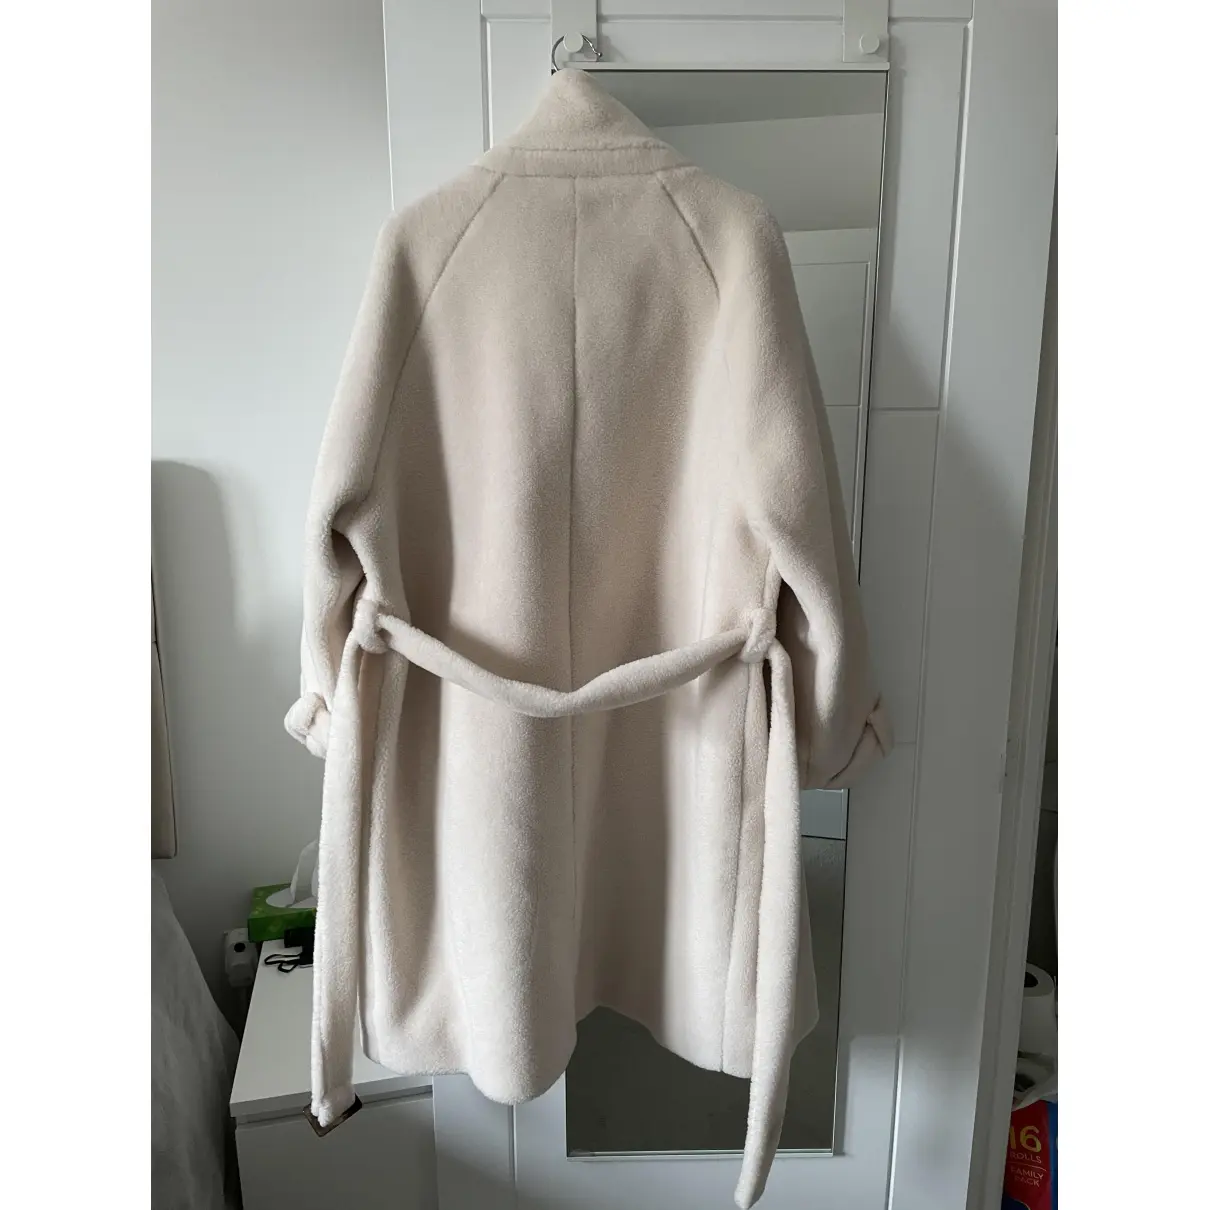 Buy Ducie Wool coat online